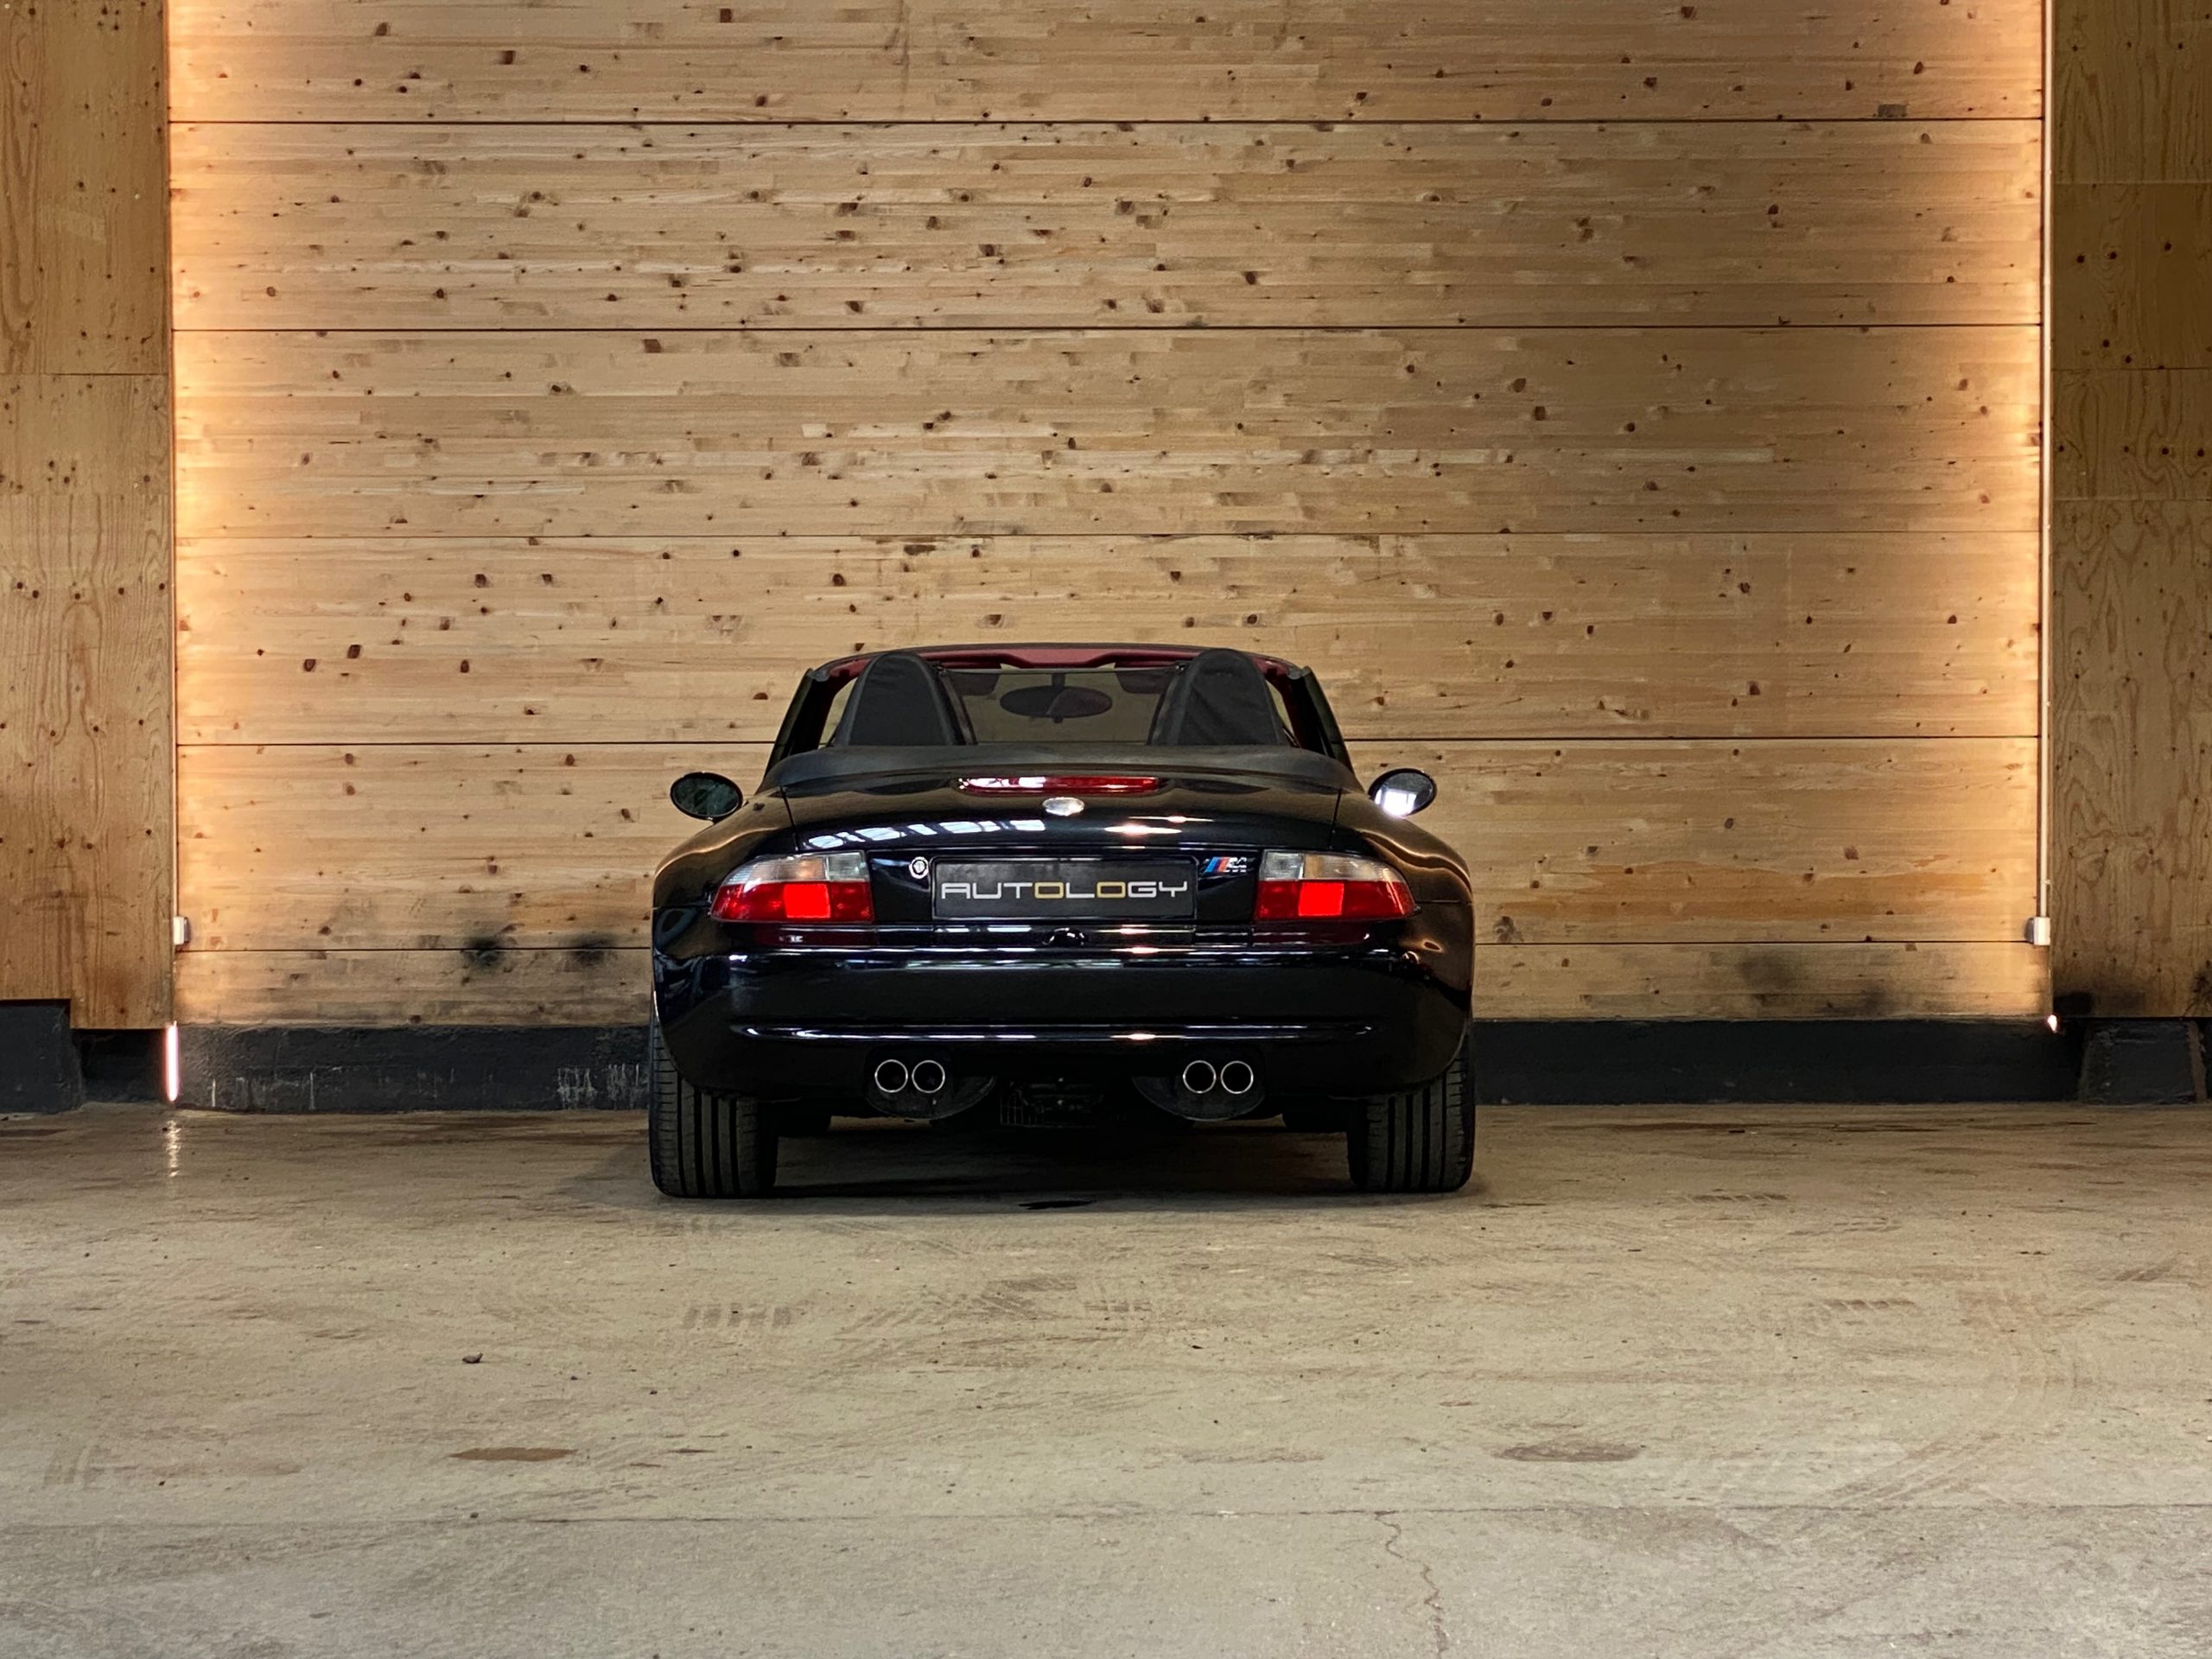 BMW Z3 M Roadster